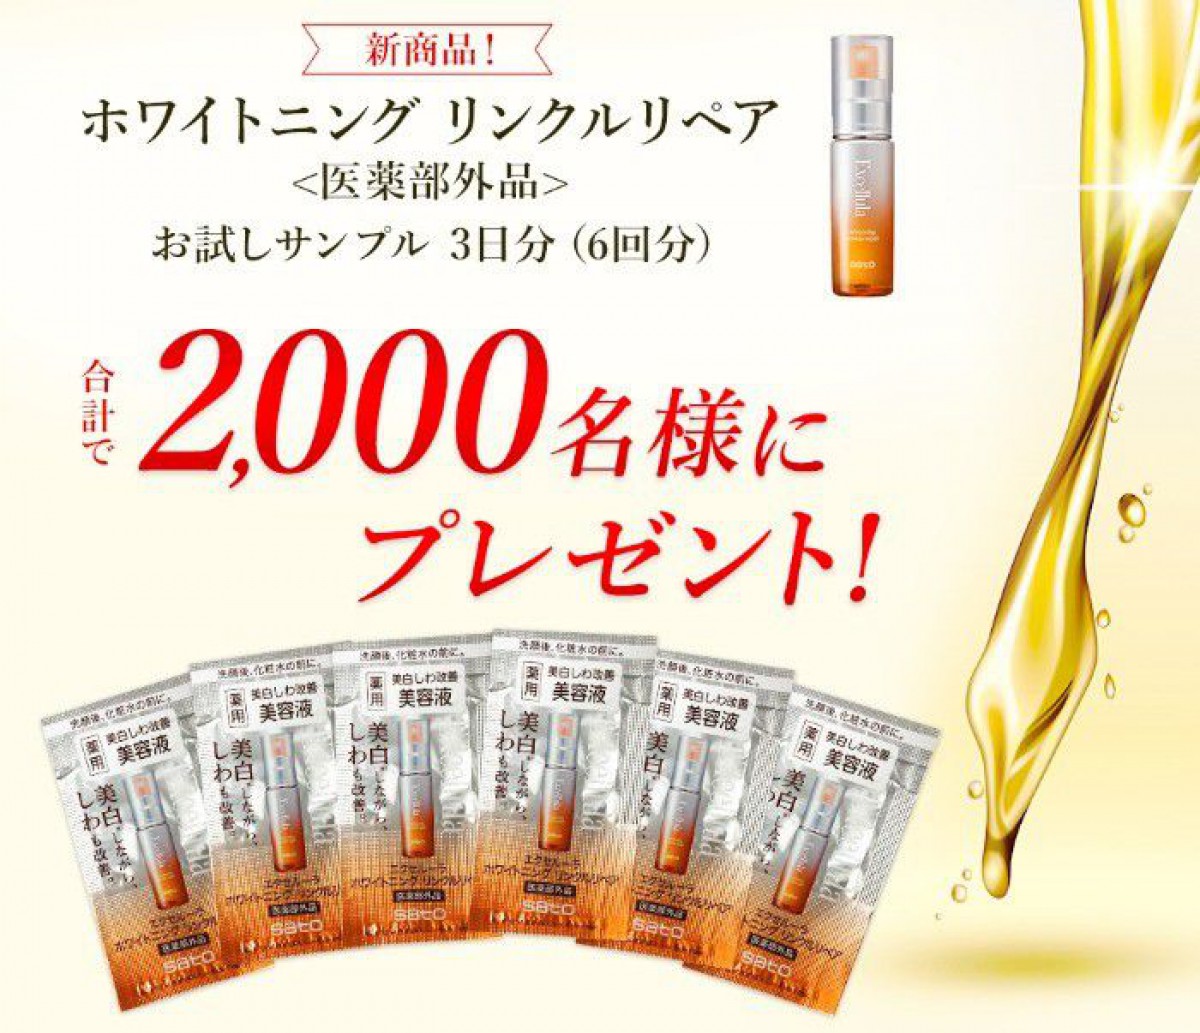 2,000名様に新商品の薬用美白しわ改善美容液サンプルが当たるキャンペーン！